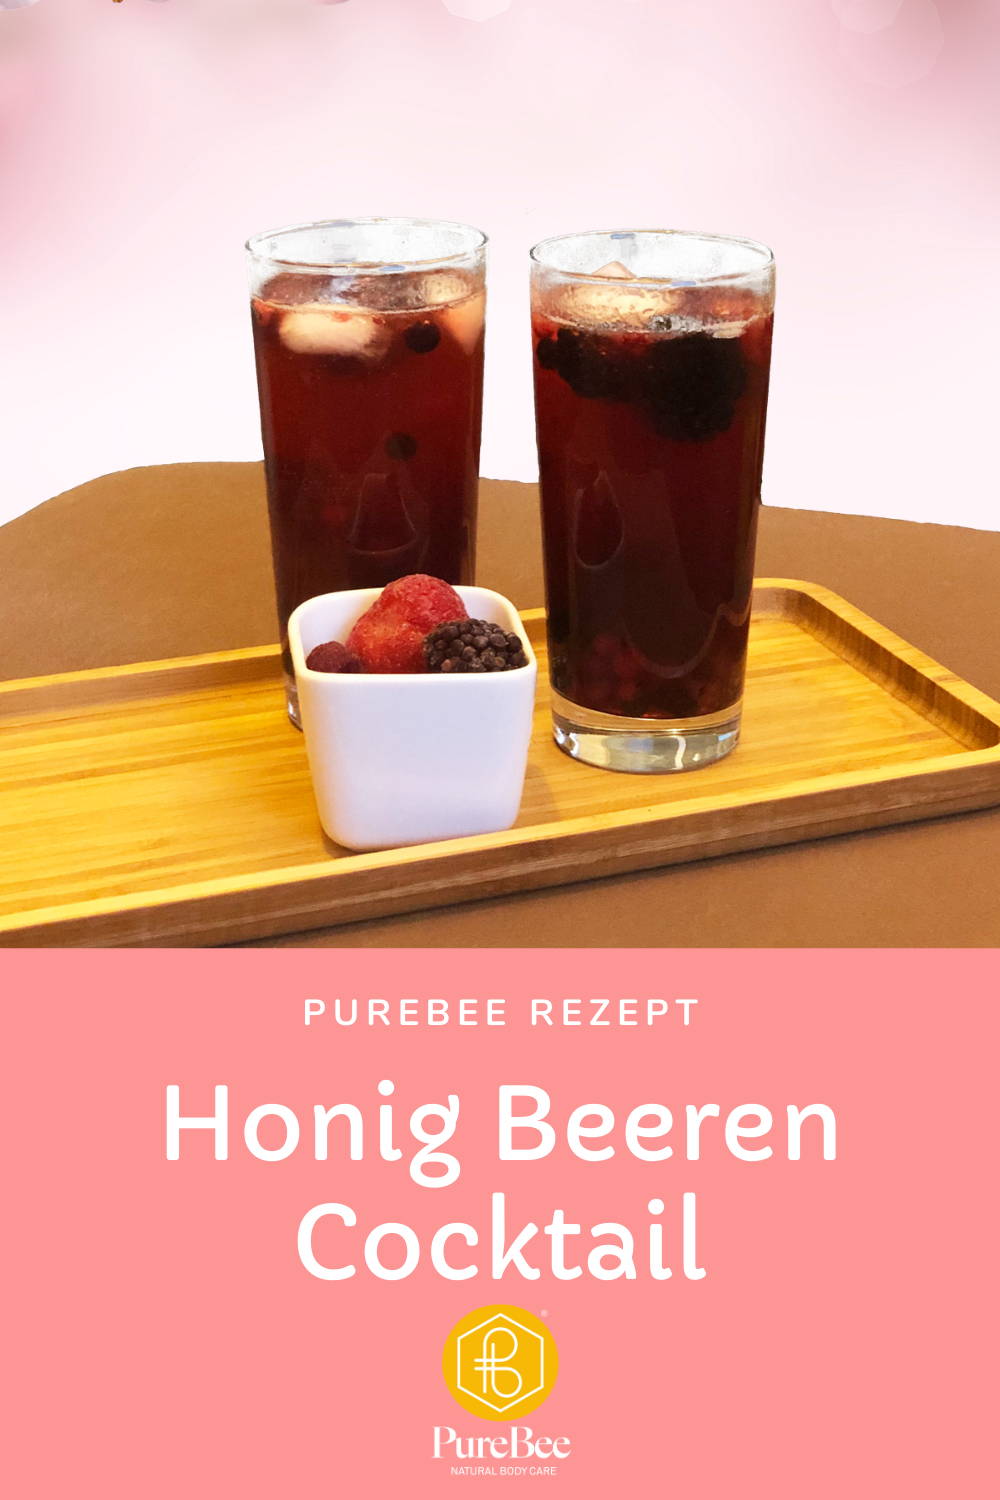 PureBee Honig Beeren Cocktail